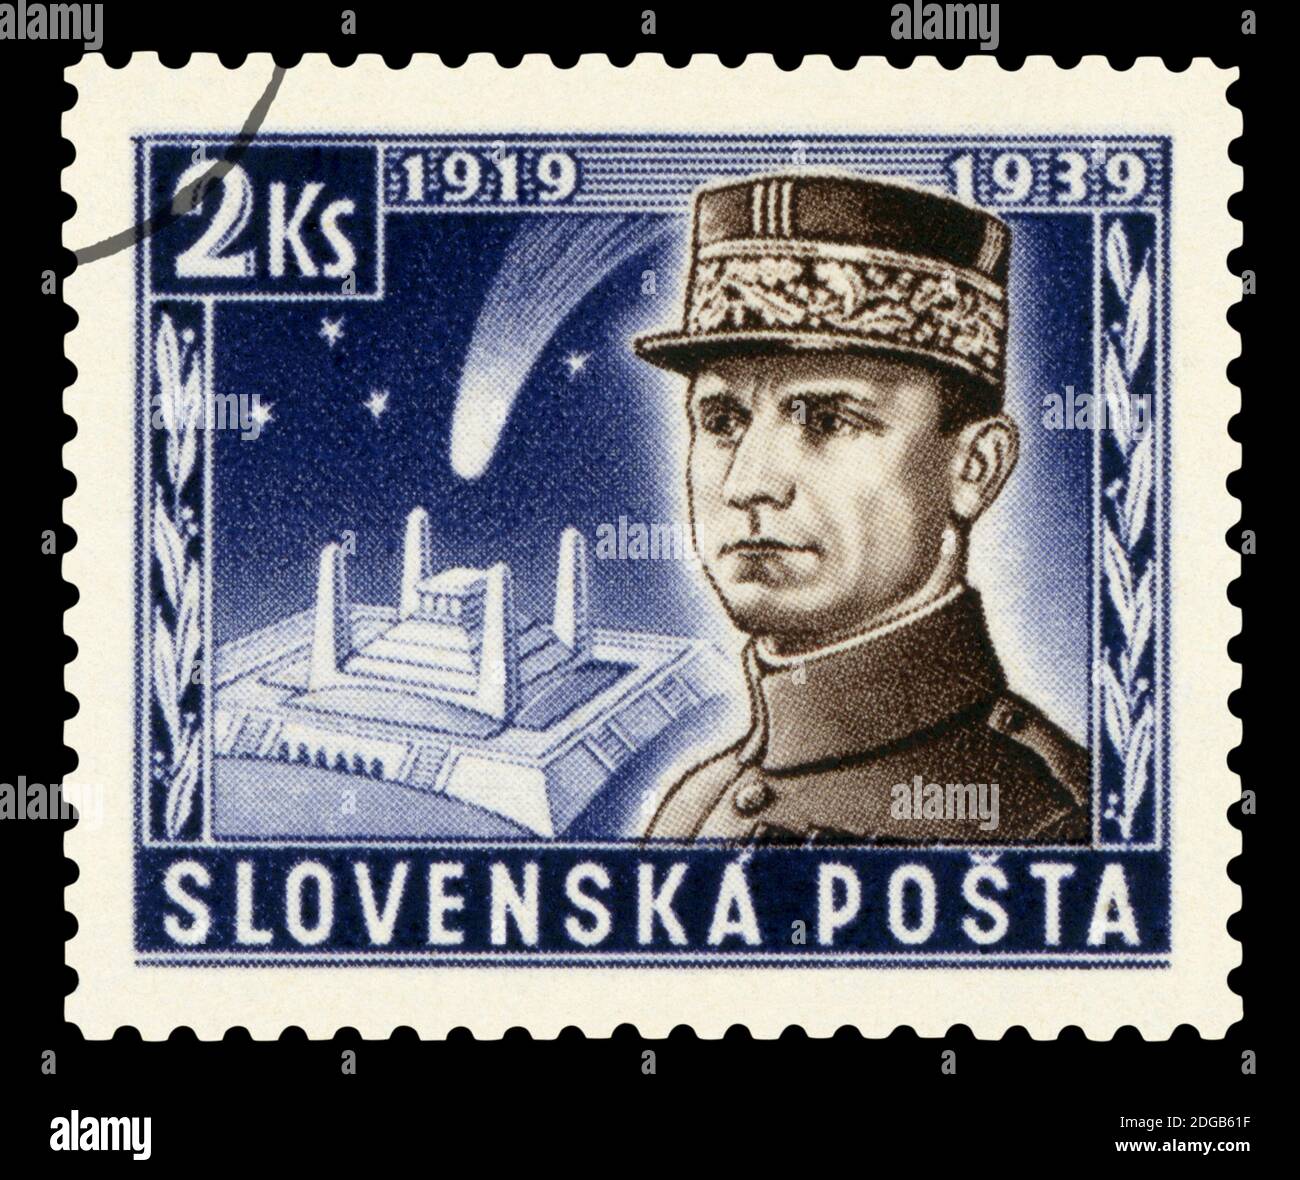 SLOWAKEI - UM 1939 : abgesagte Briefmarke gedruckt von der Slowakei, zeigt das Porträt von General Milan Rastislav Stefanik, um 1939. Stockfoto